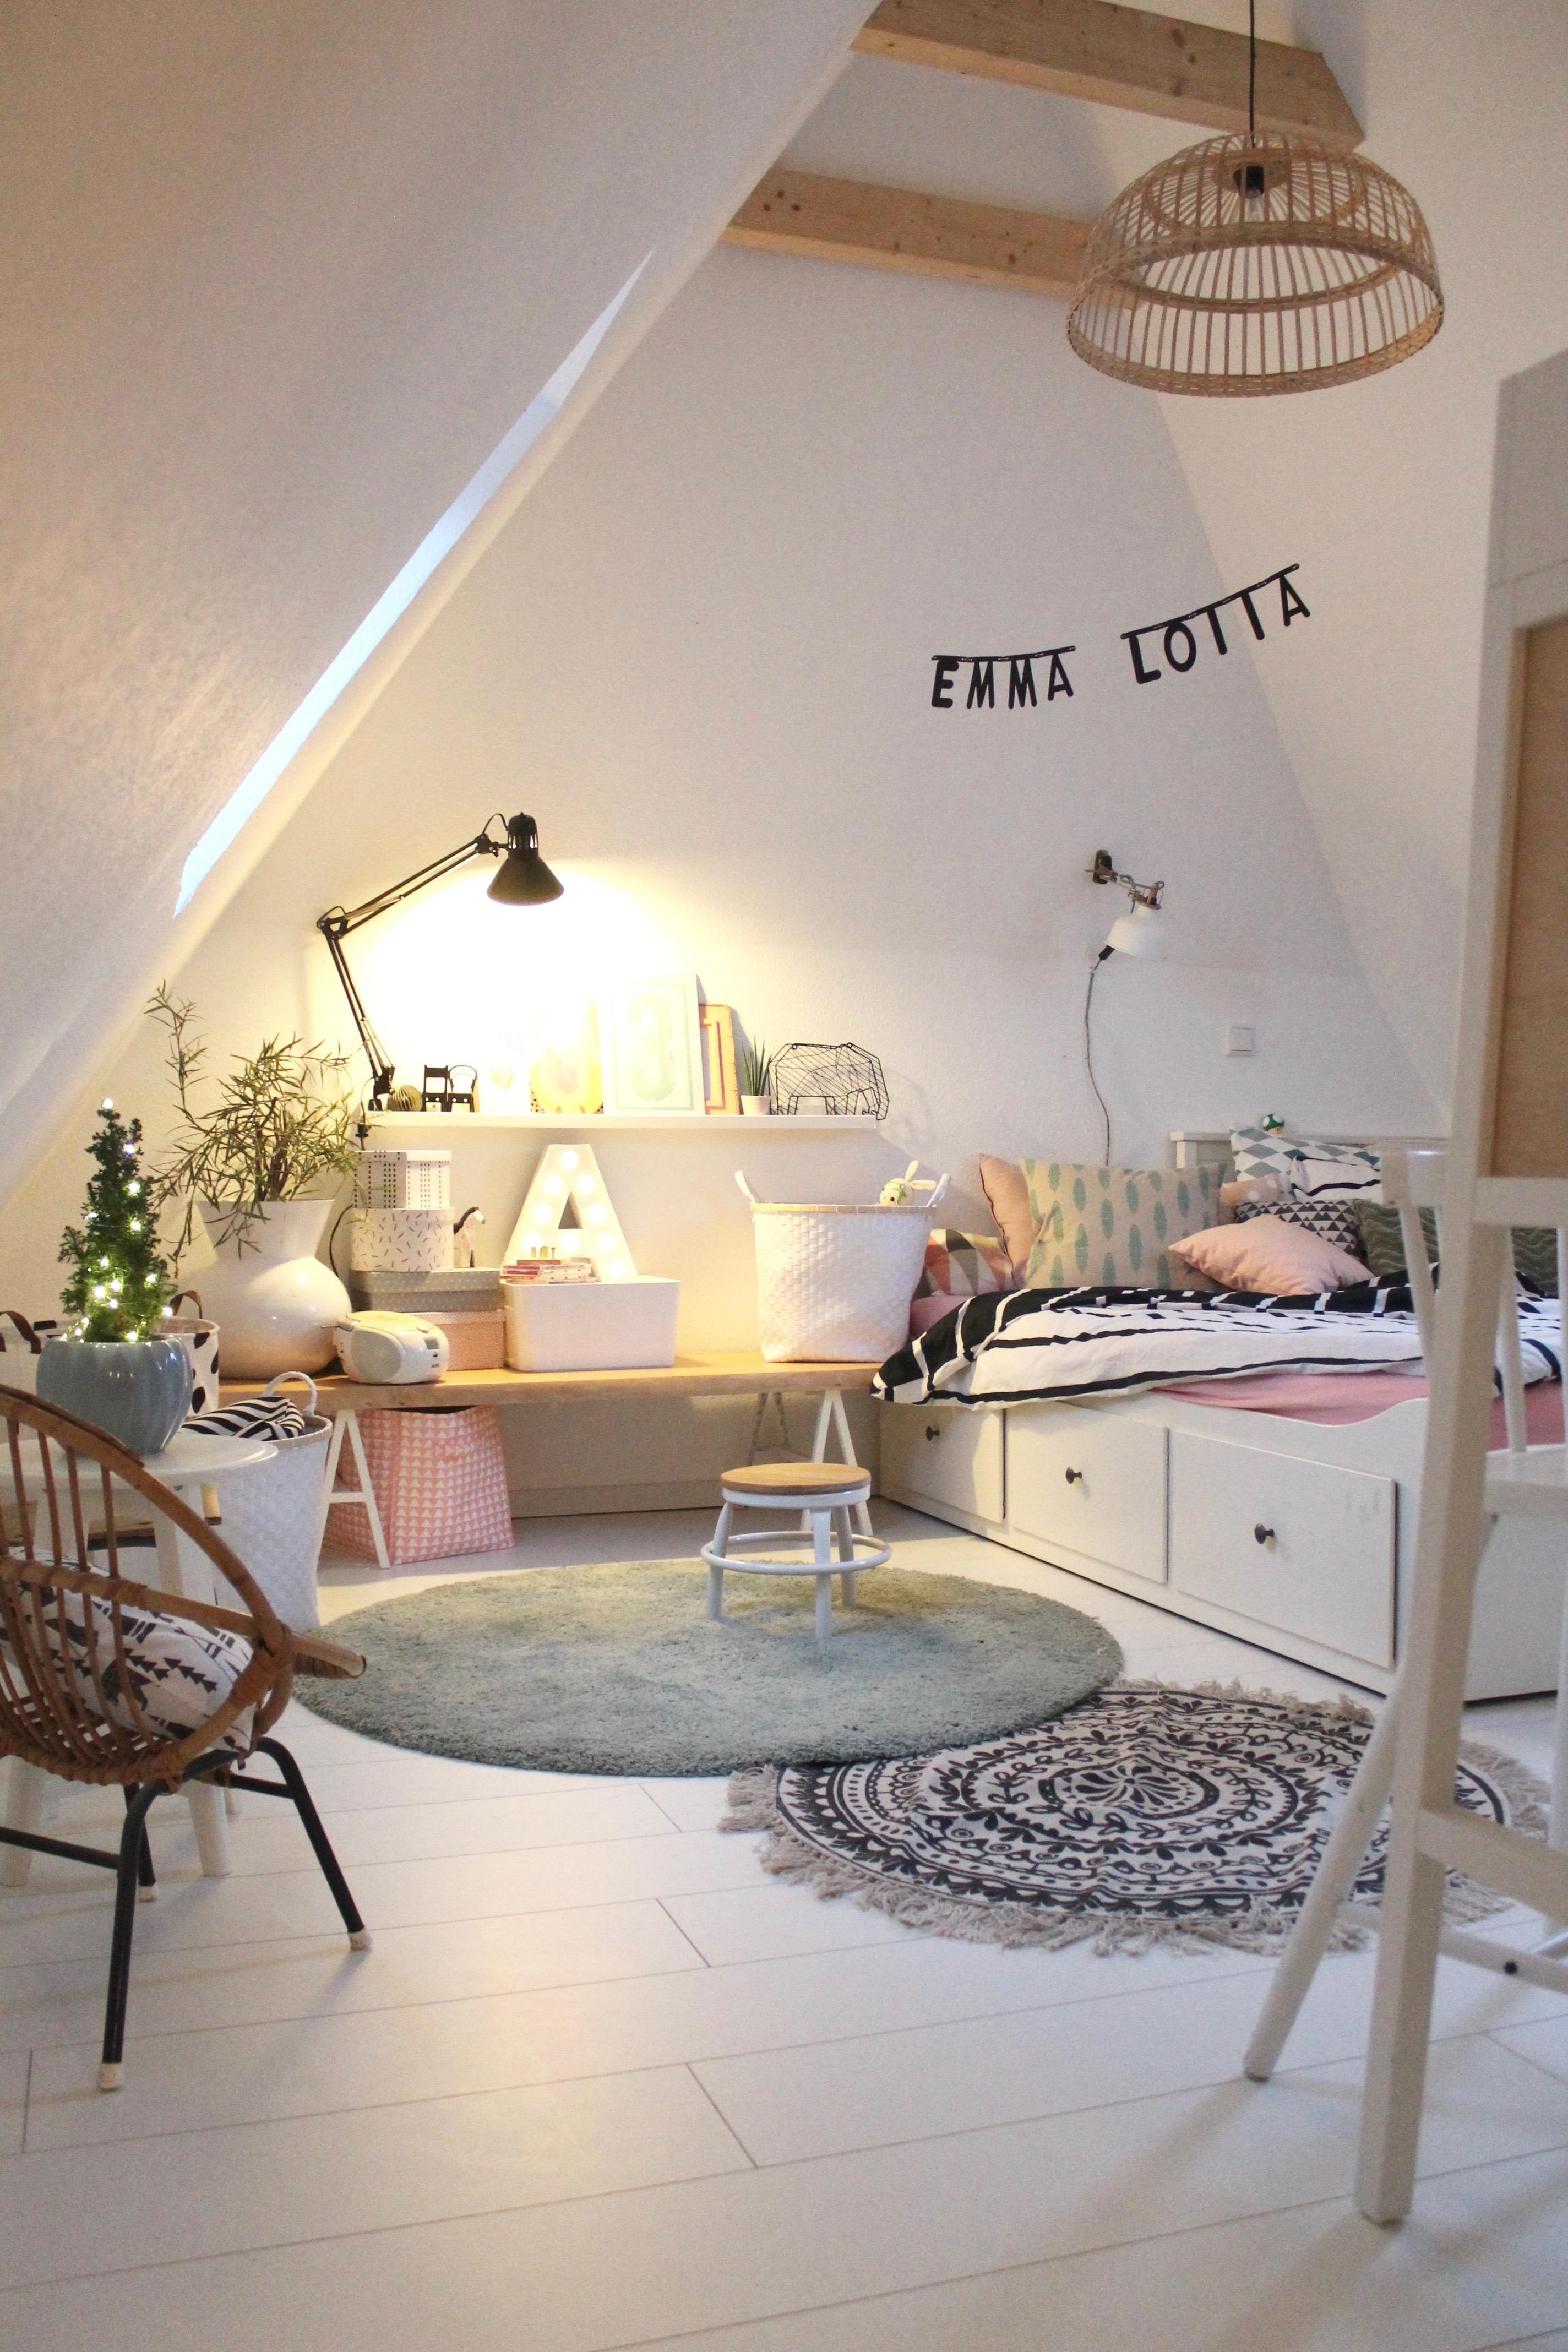 Emma's Dachgeschoß-Zimmer
#kidsroom#scandinavian#girl#pastell